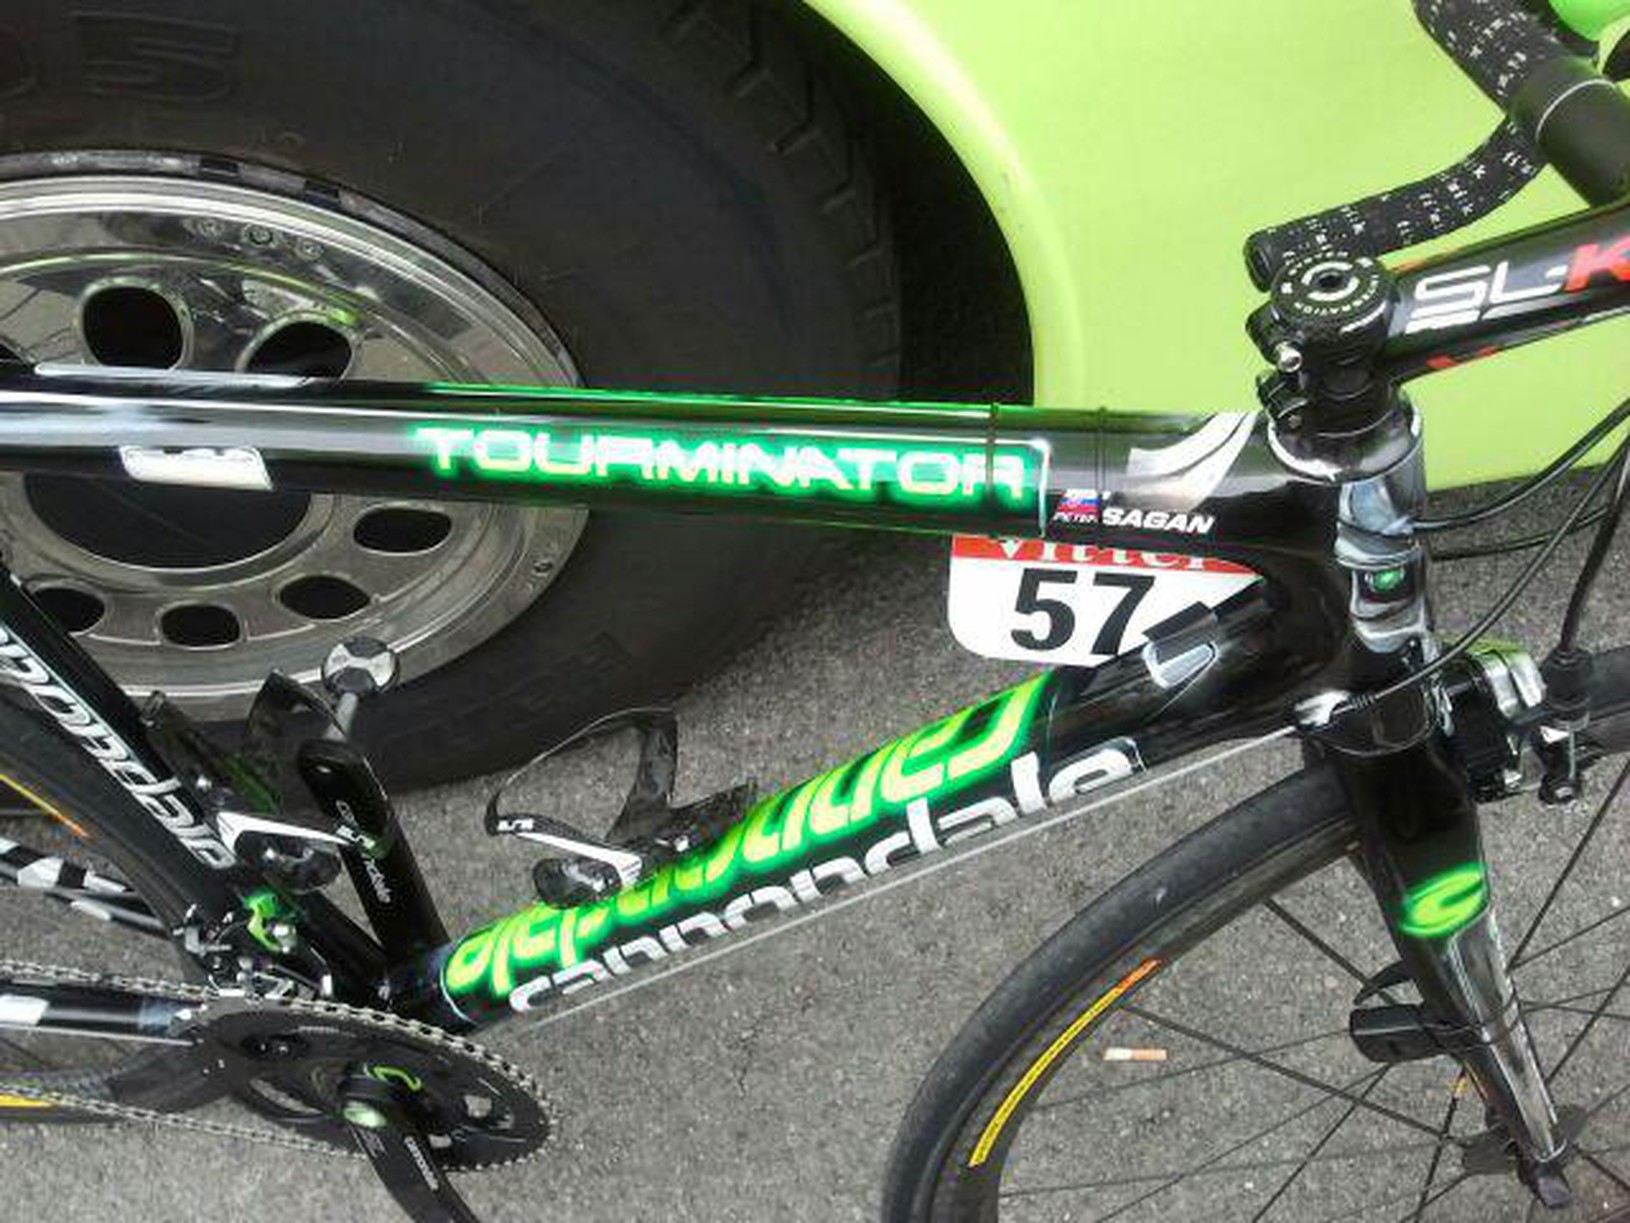 Nový bicykel Petra Sagana